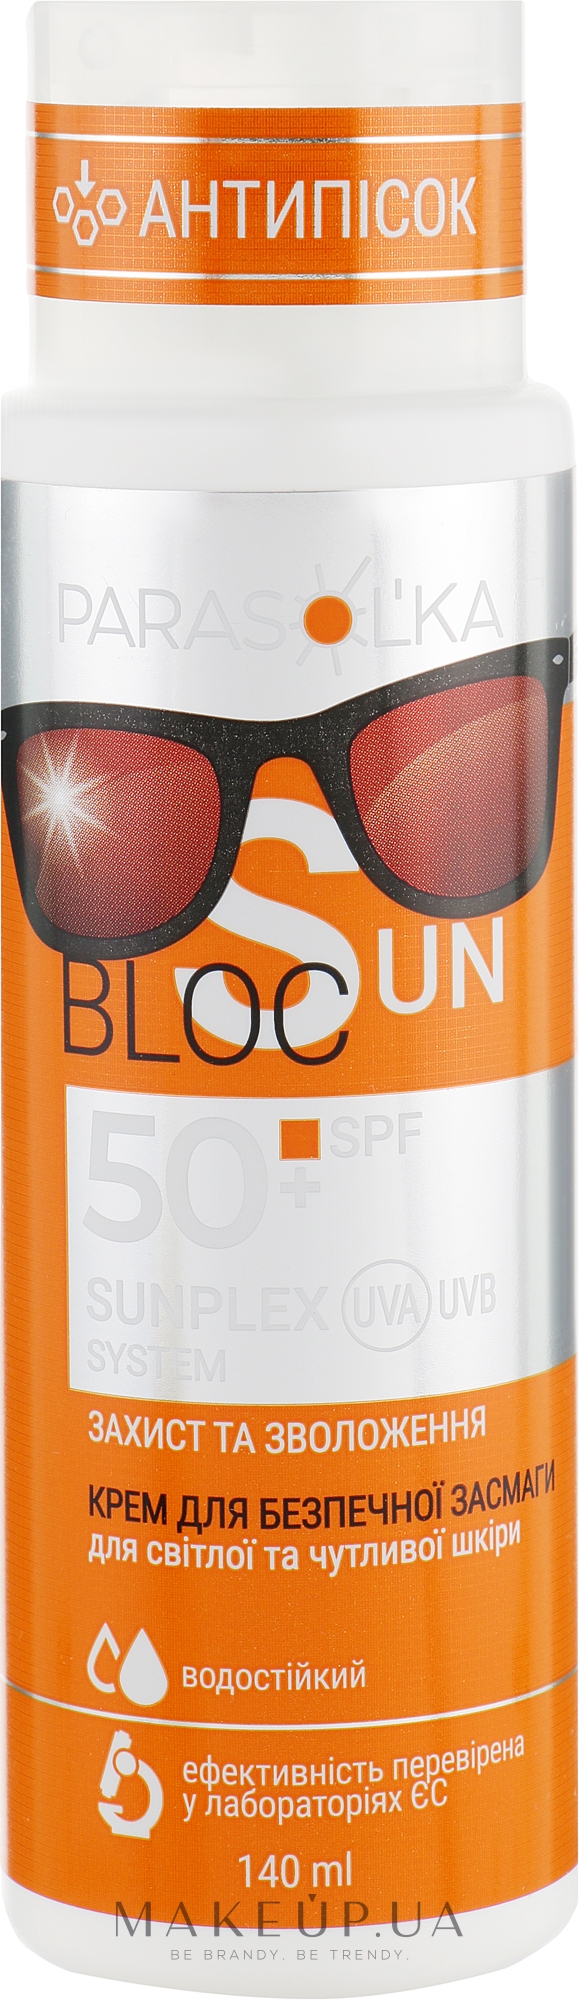 Крем для безопасного загара для светлой и чувствительной кожи SPF50 - Velta Cosmetic Parasol'ka Sun Cream — фото 140ml